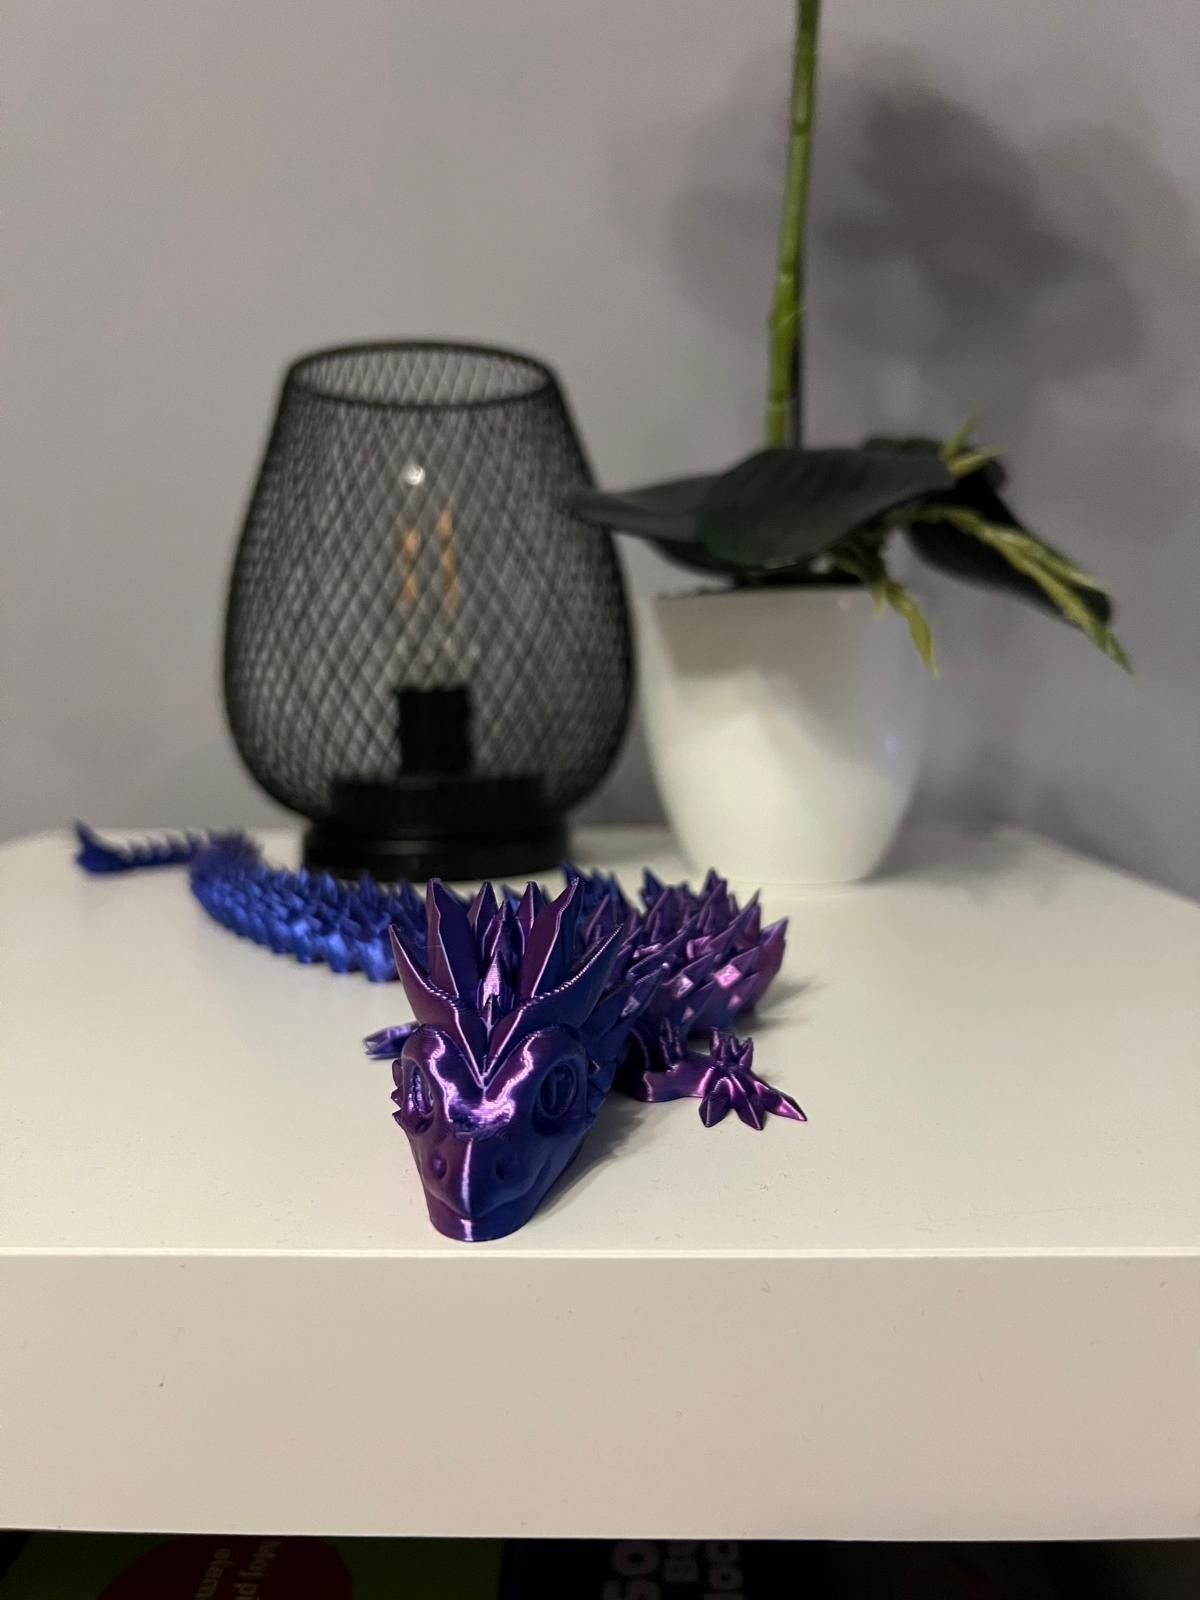 Ozdoba figurka Dragon smok ruchomy zabawka flexi